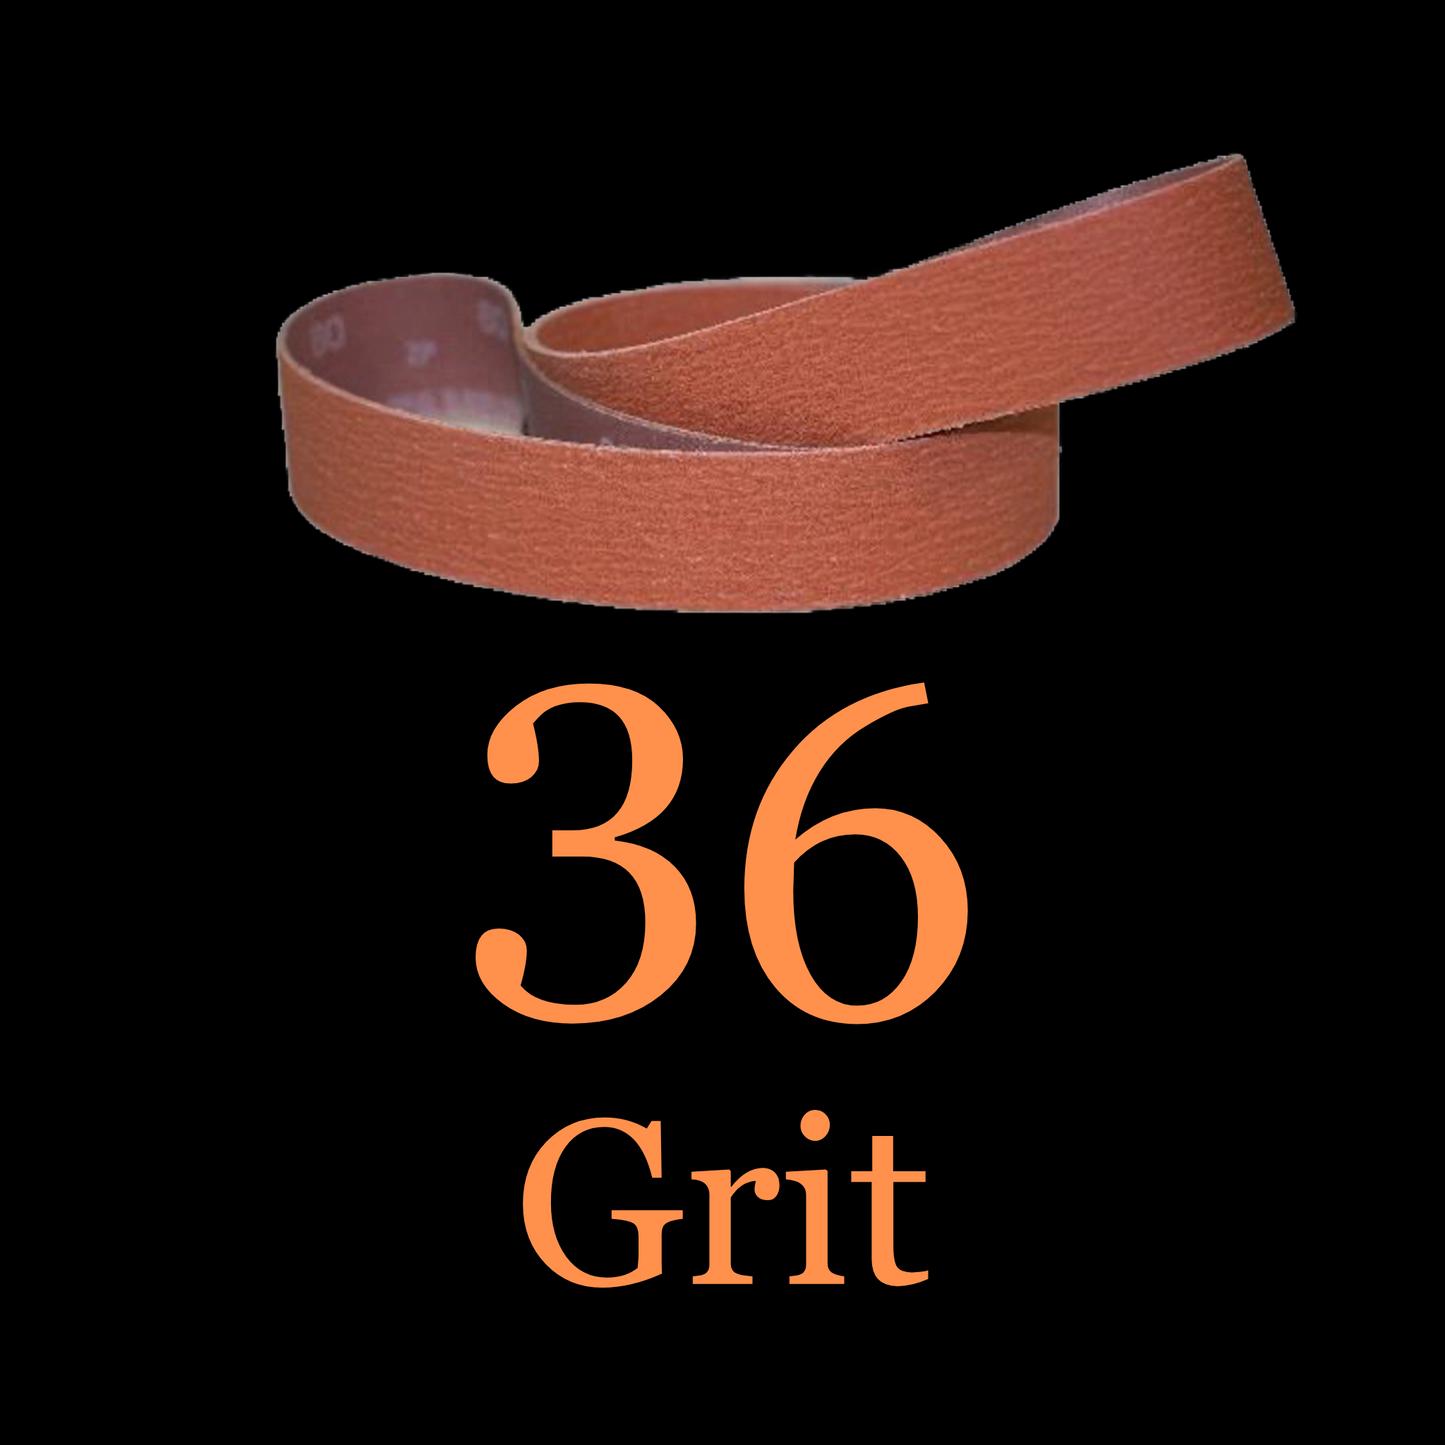 1” x 30” Ceramic Blaze Grinder Belt 36 Grit